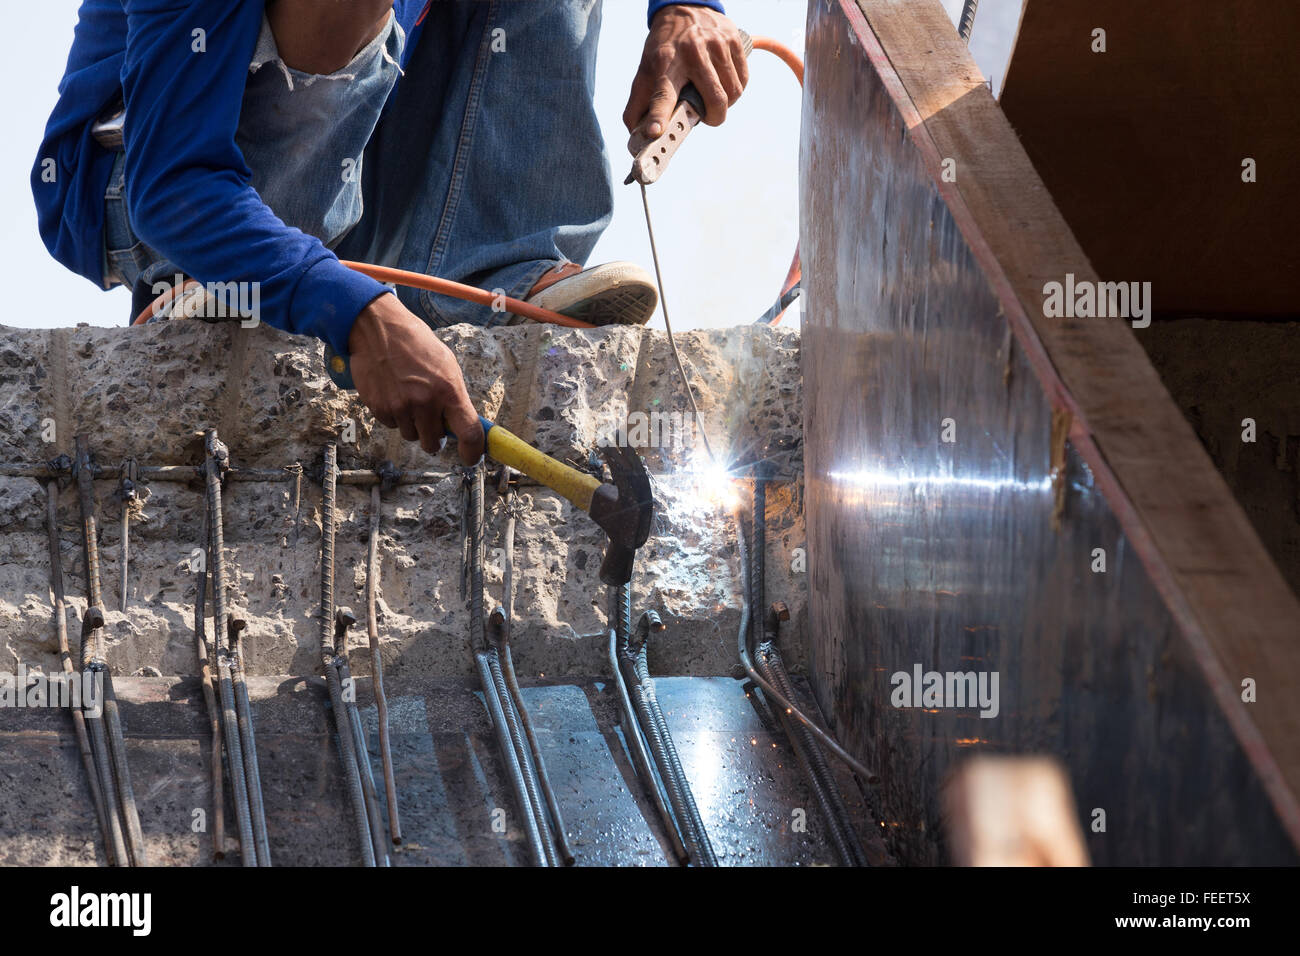 worker welding steel metal at construction site Stock Photo